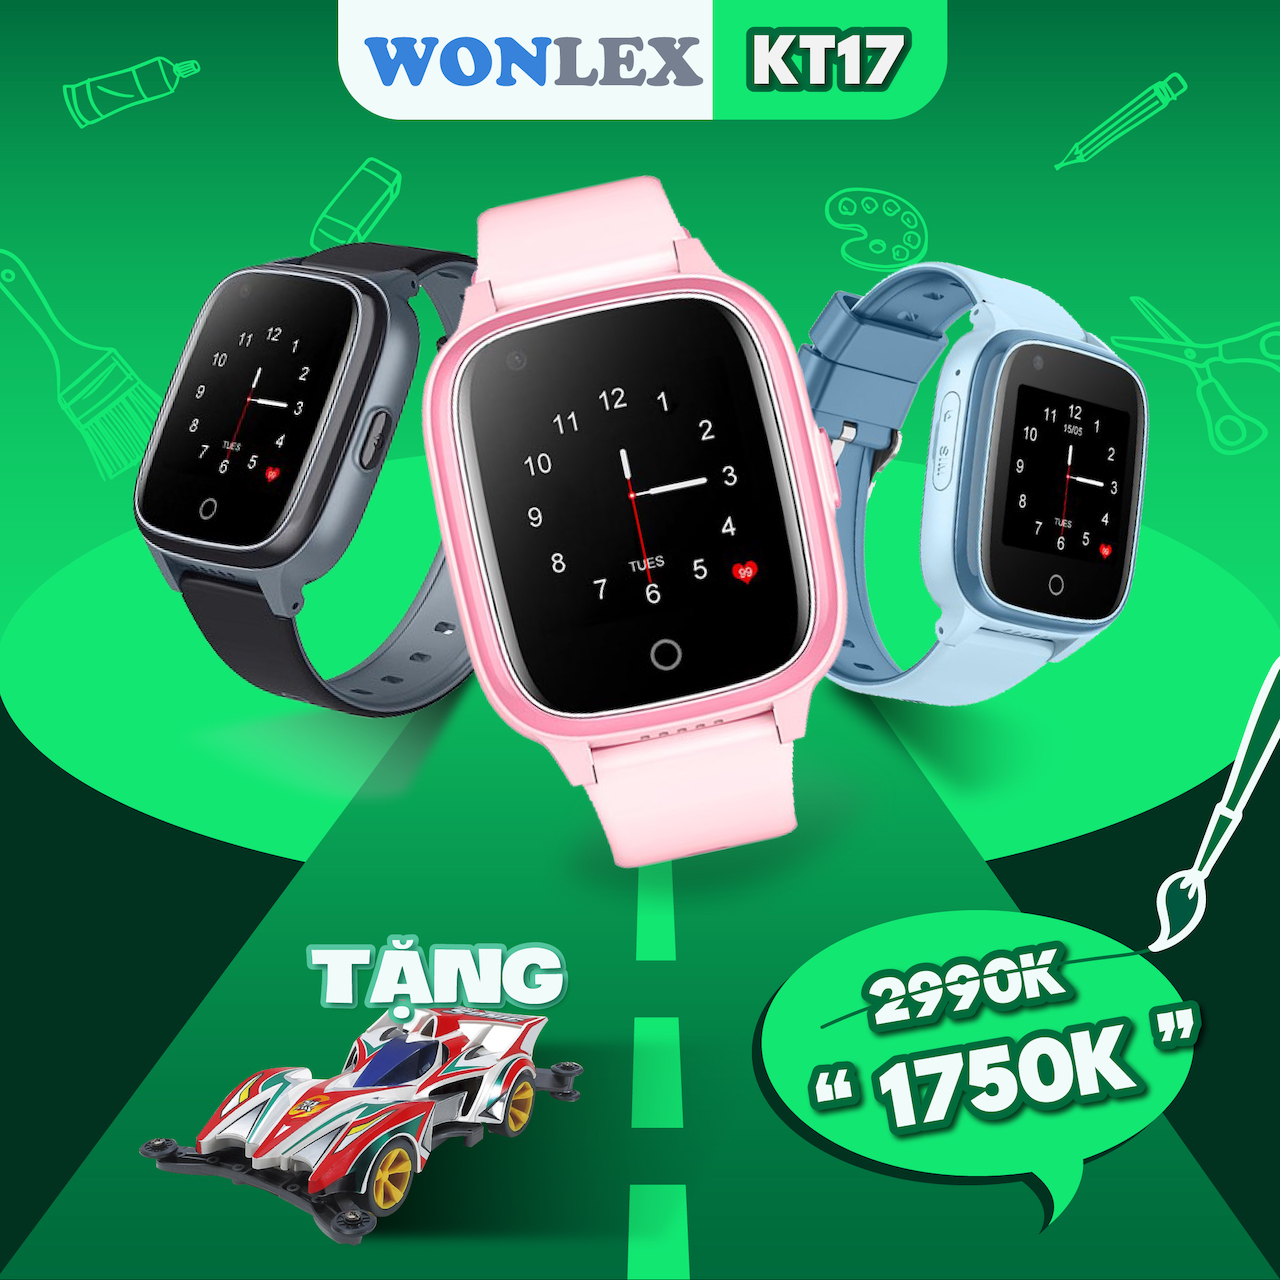 Đồng hồ định vị Wonlex KT17